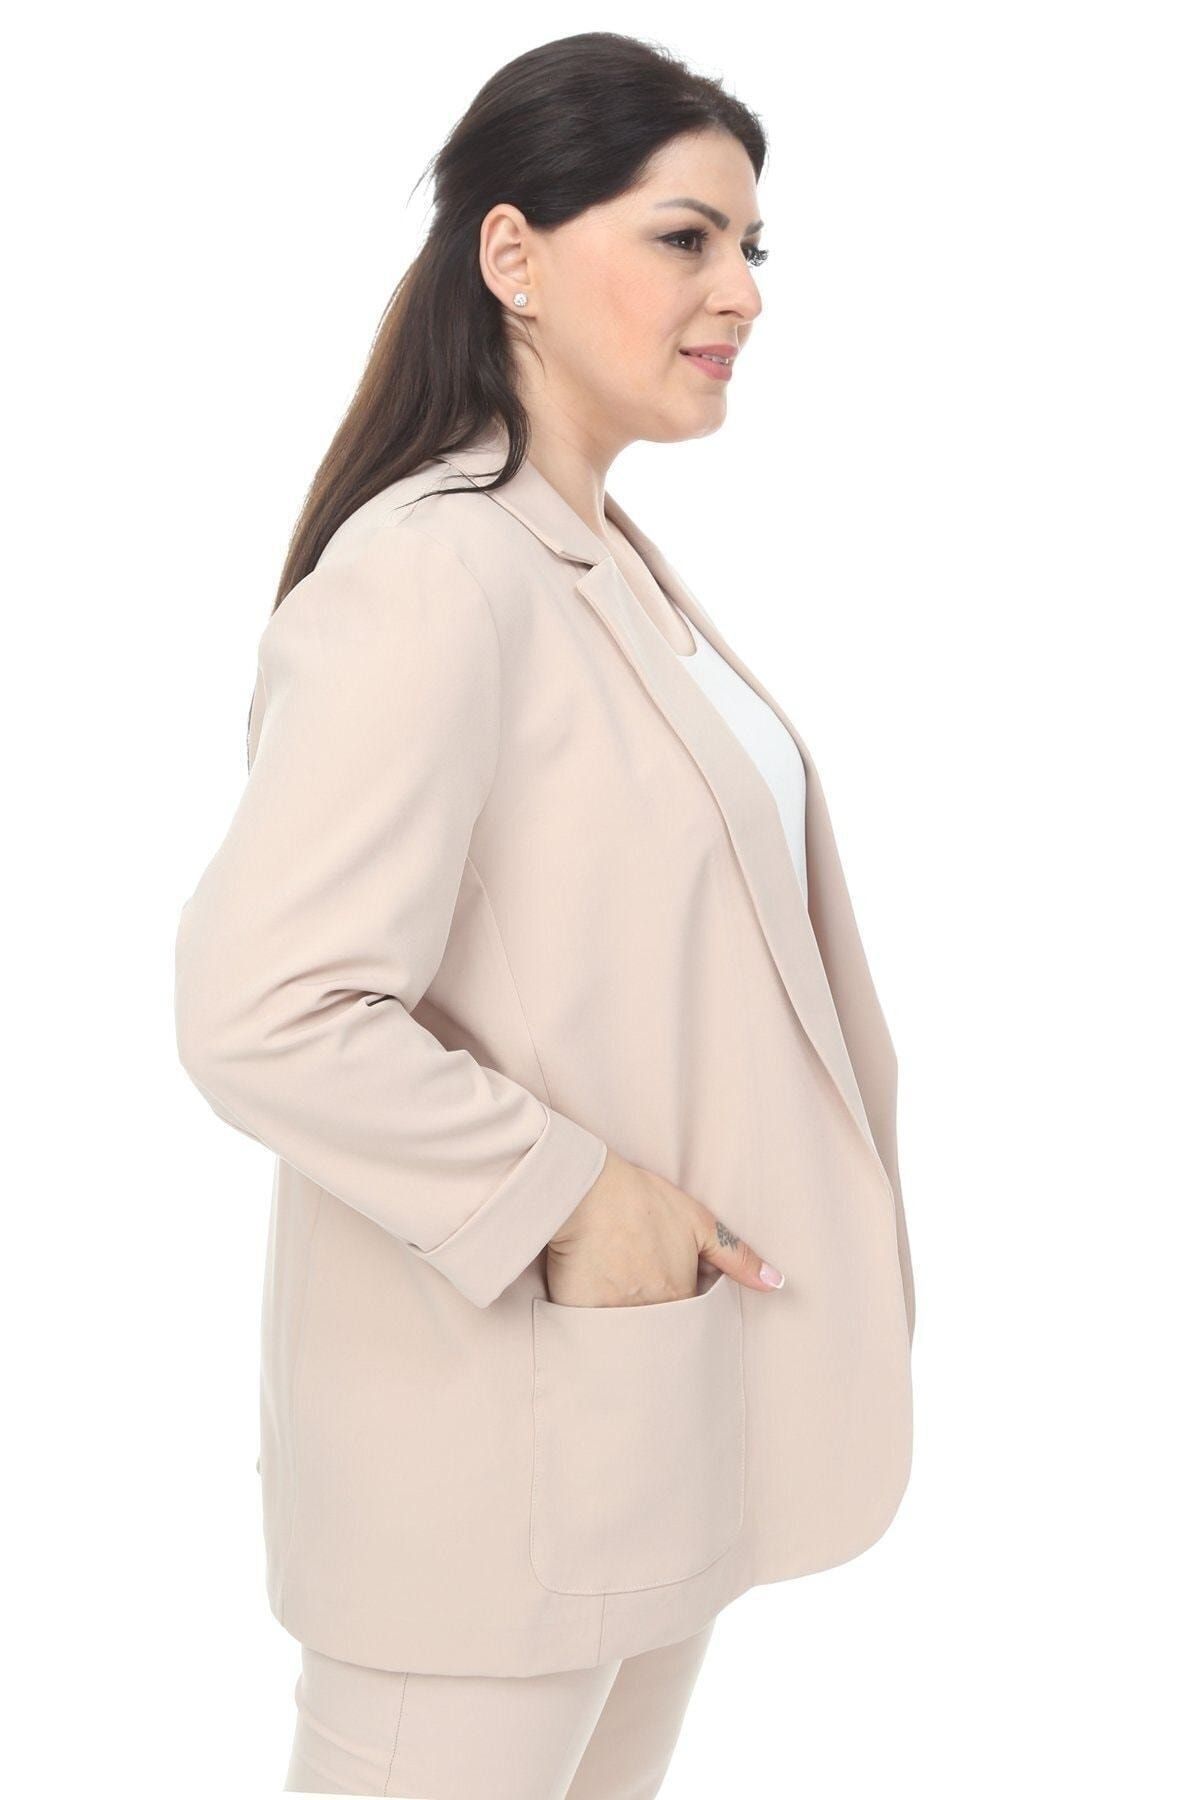 Hanezza Kadın Blazer Ceket | Krem | Büyük Beden | 7 Renk | Takım Elbise Uyumlu